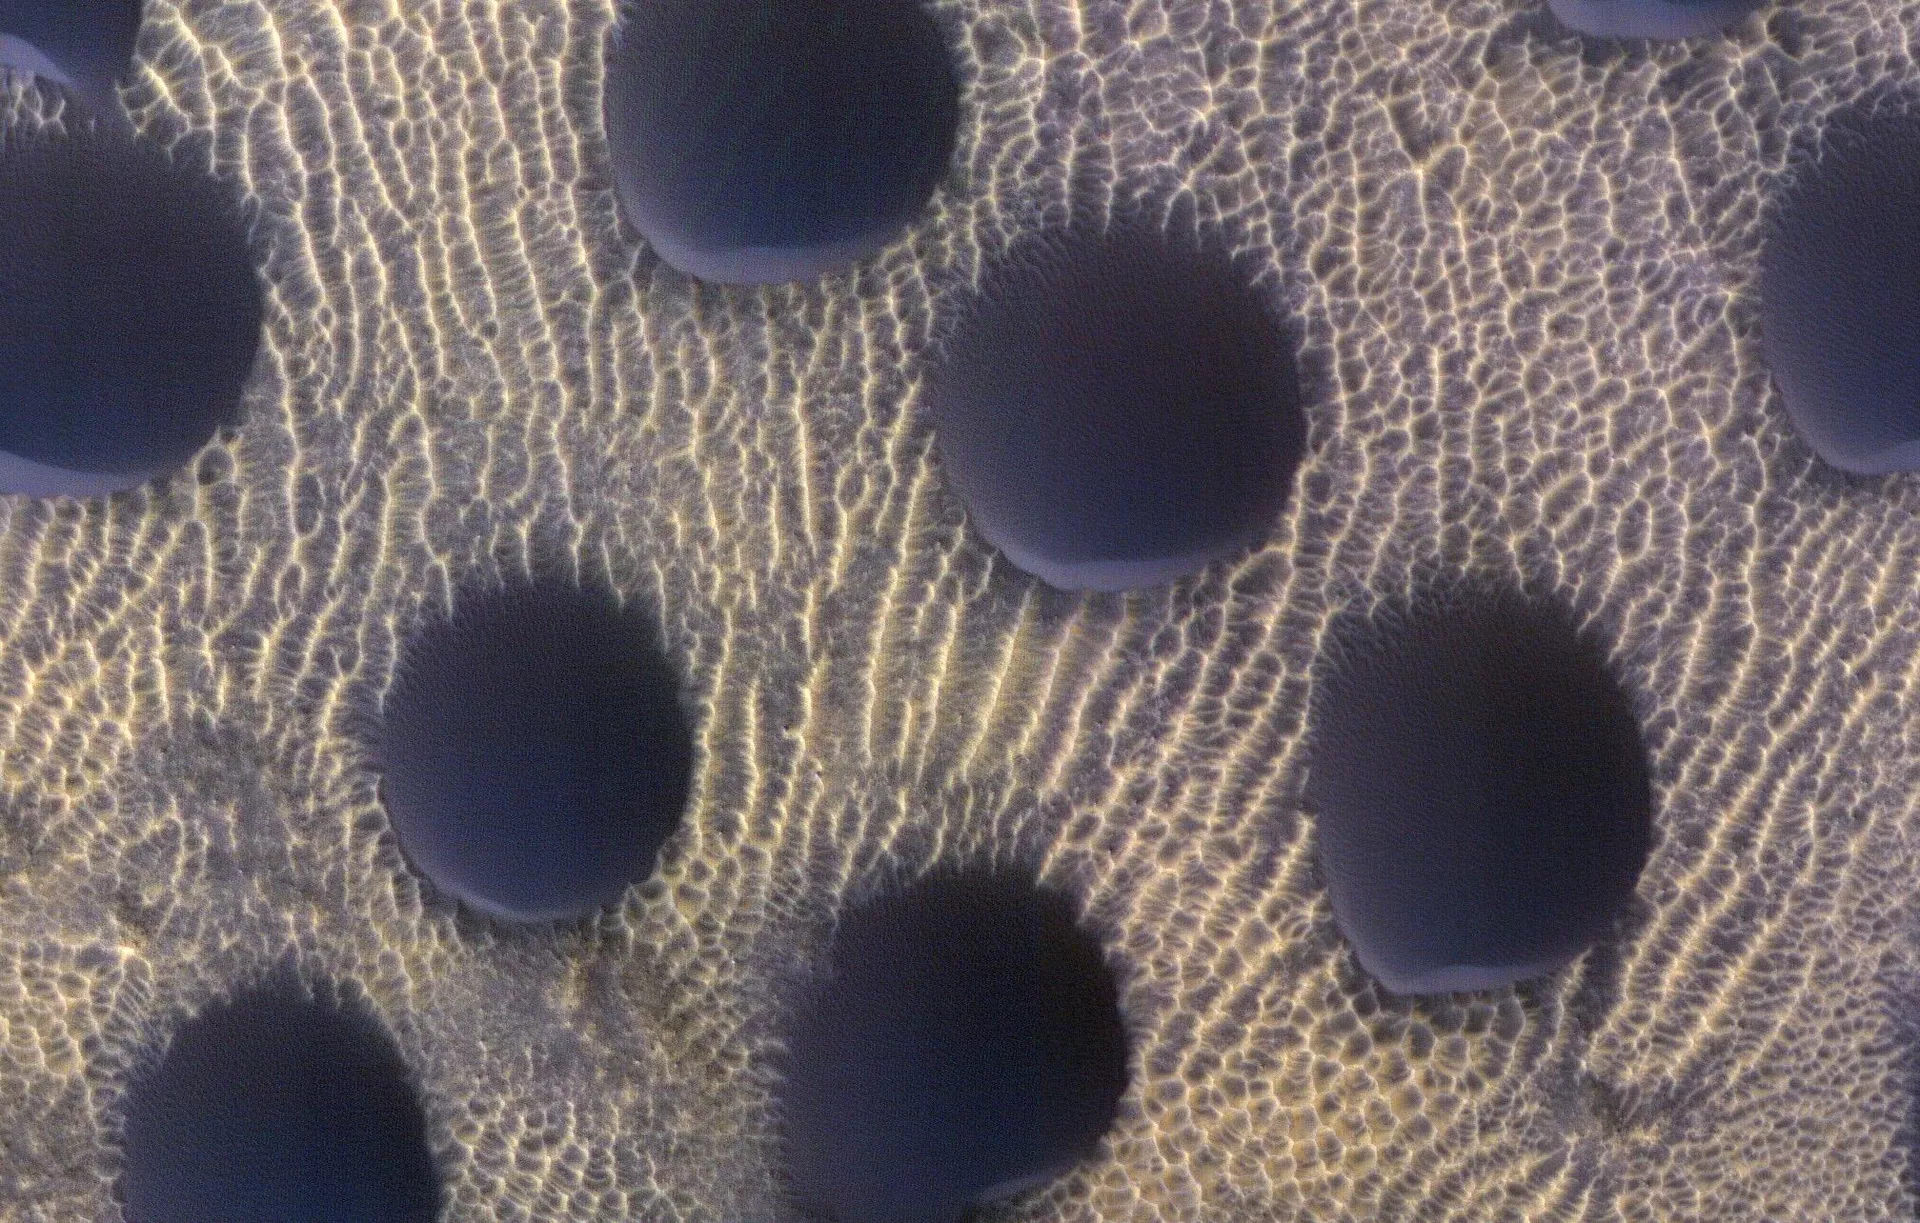 Фотографии: космический корабль НАСА запечатлел странные круглые песчаные дюны на Красной планете